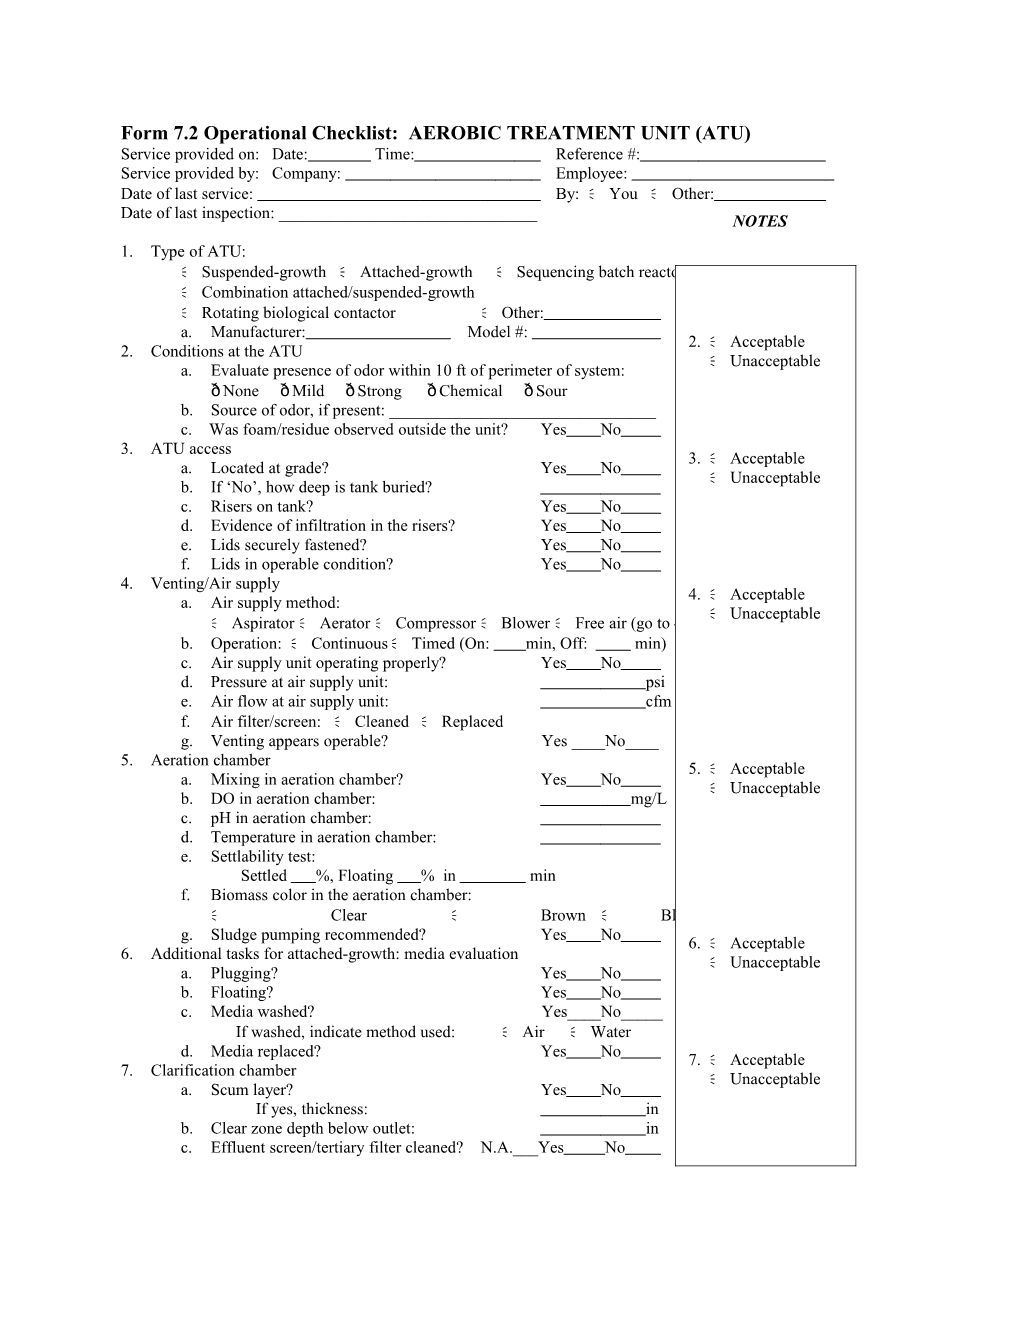 Form 7.2 Operational Checklist: AEROBIC TREATMENT UNIT (ATU)